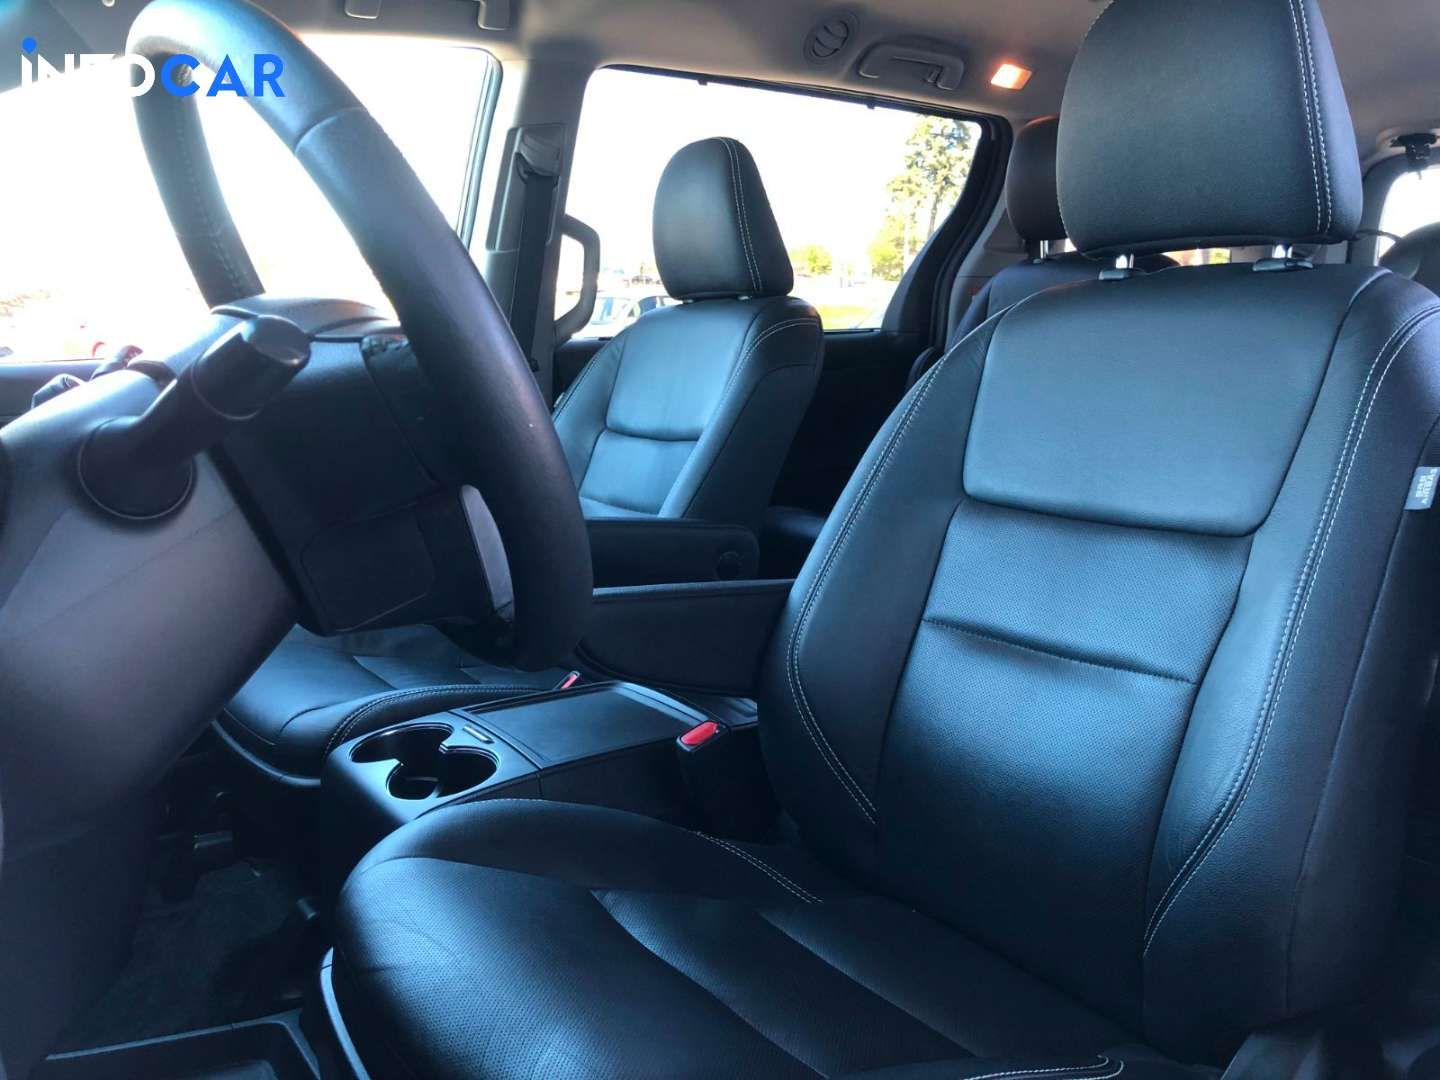 2017 Toyota Sienna minivan - INFOCAR - Toronto Auto Trading Platform